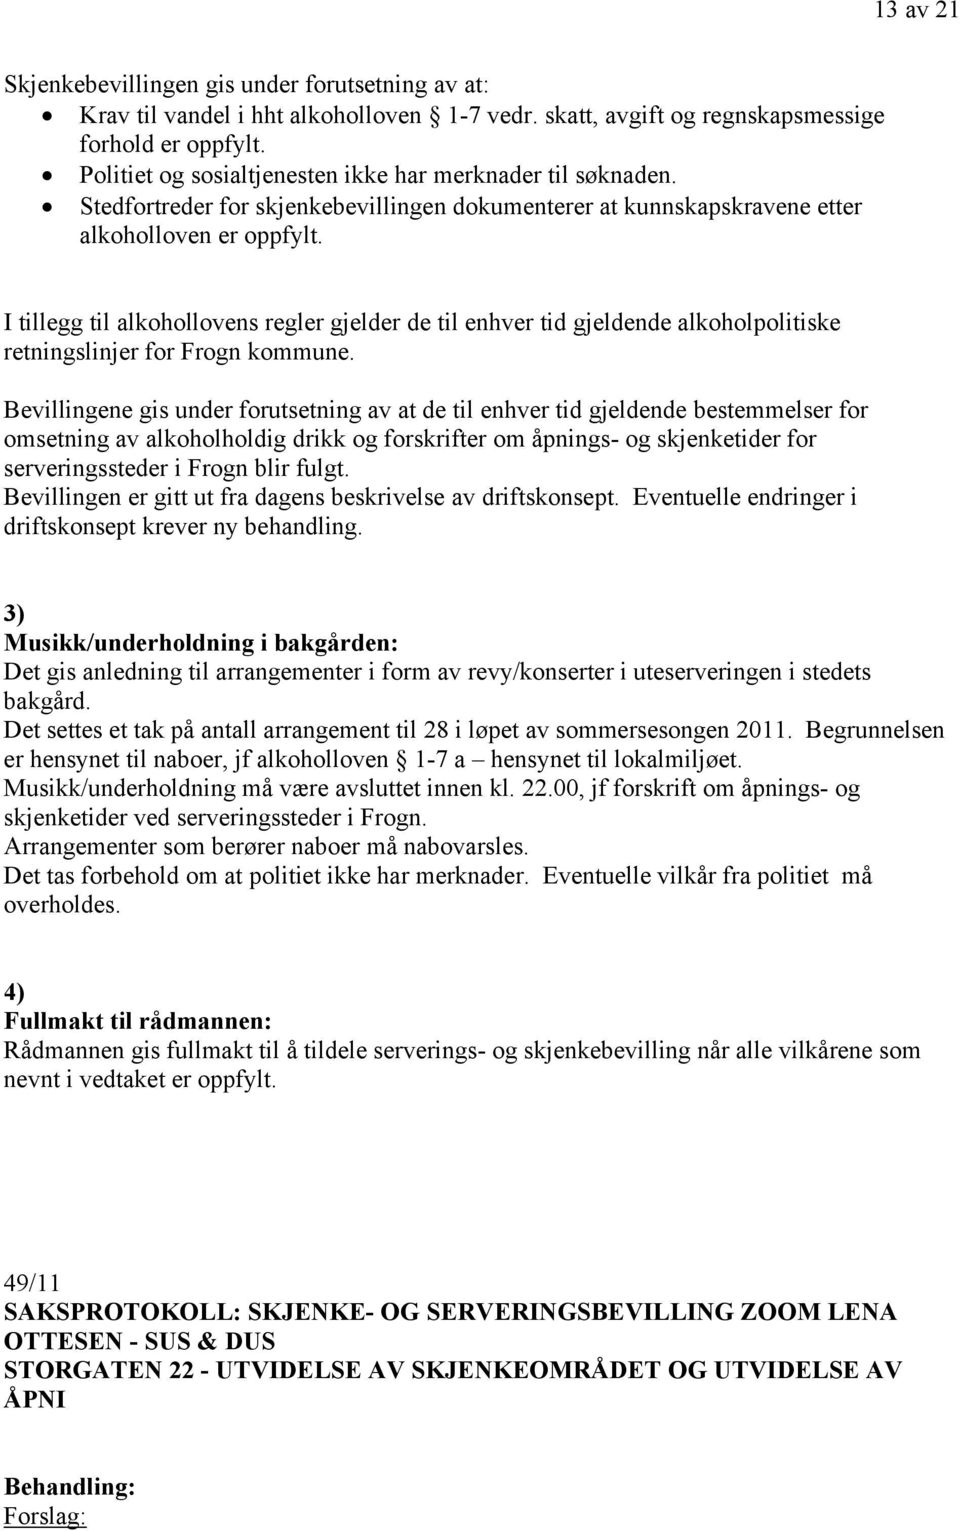 I tillegg til alkohollovens regler gjelder de til enhver tid gjeldende alkoholpolitiske retningslinjer for Frogn kommune.